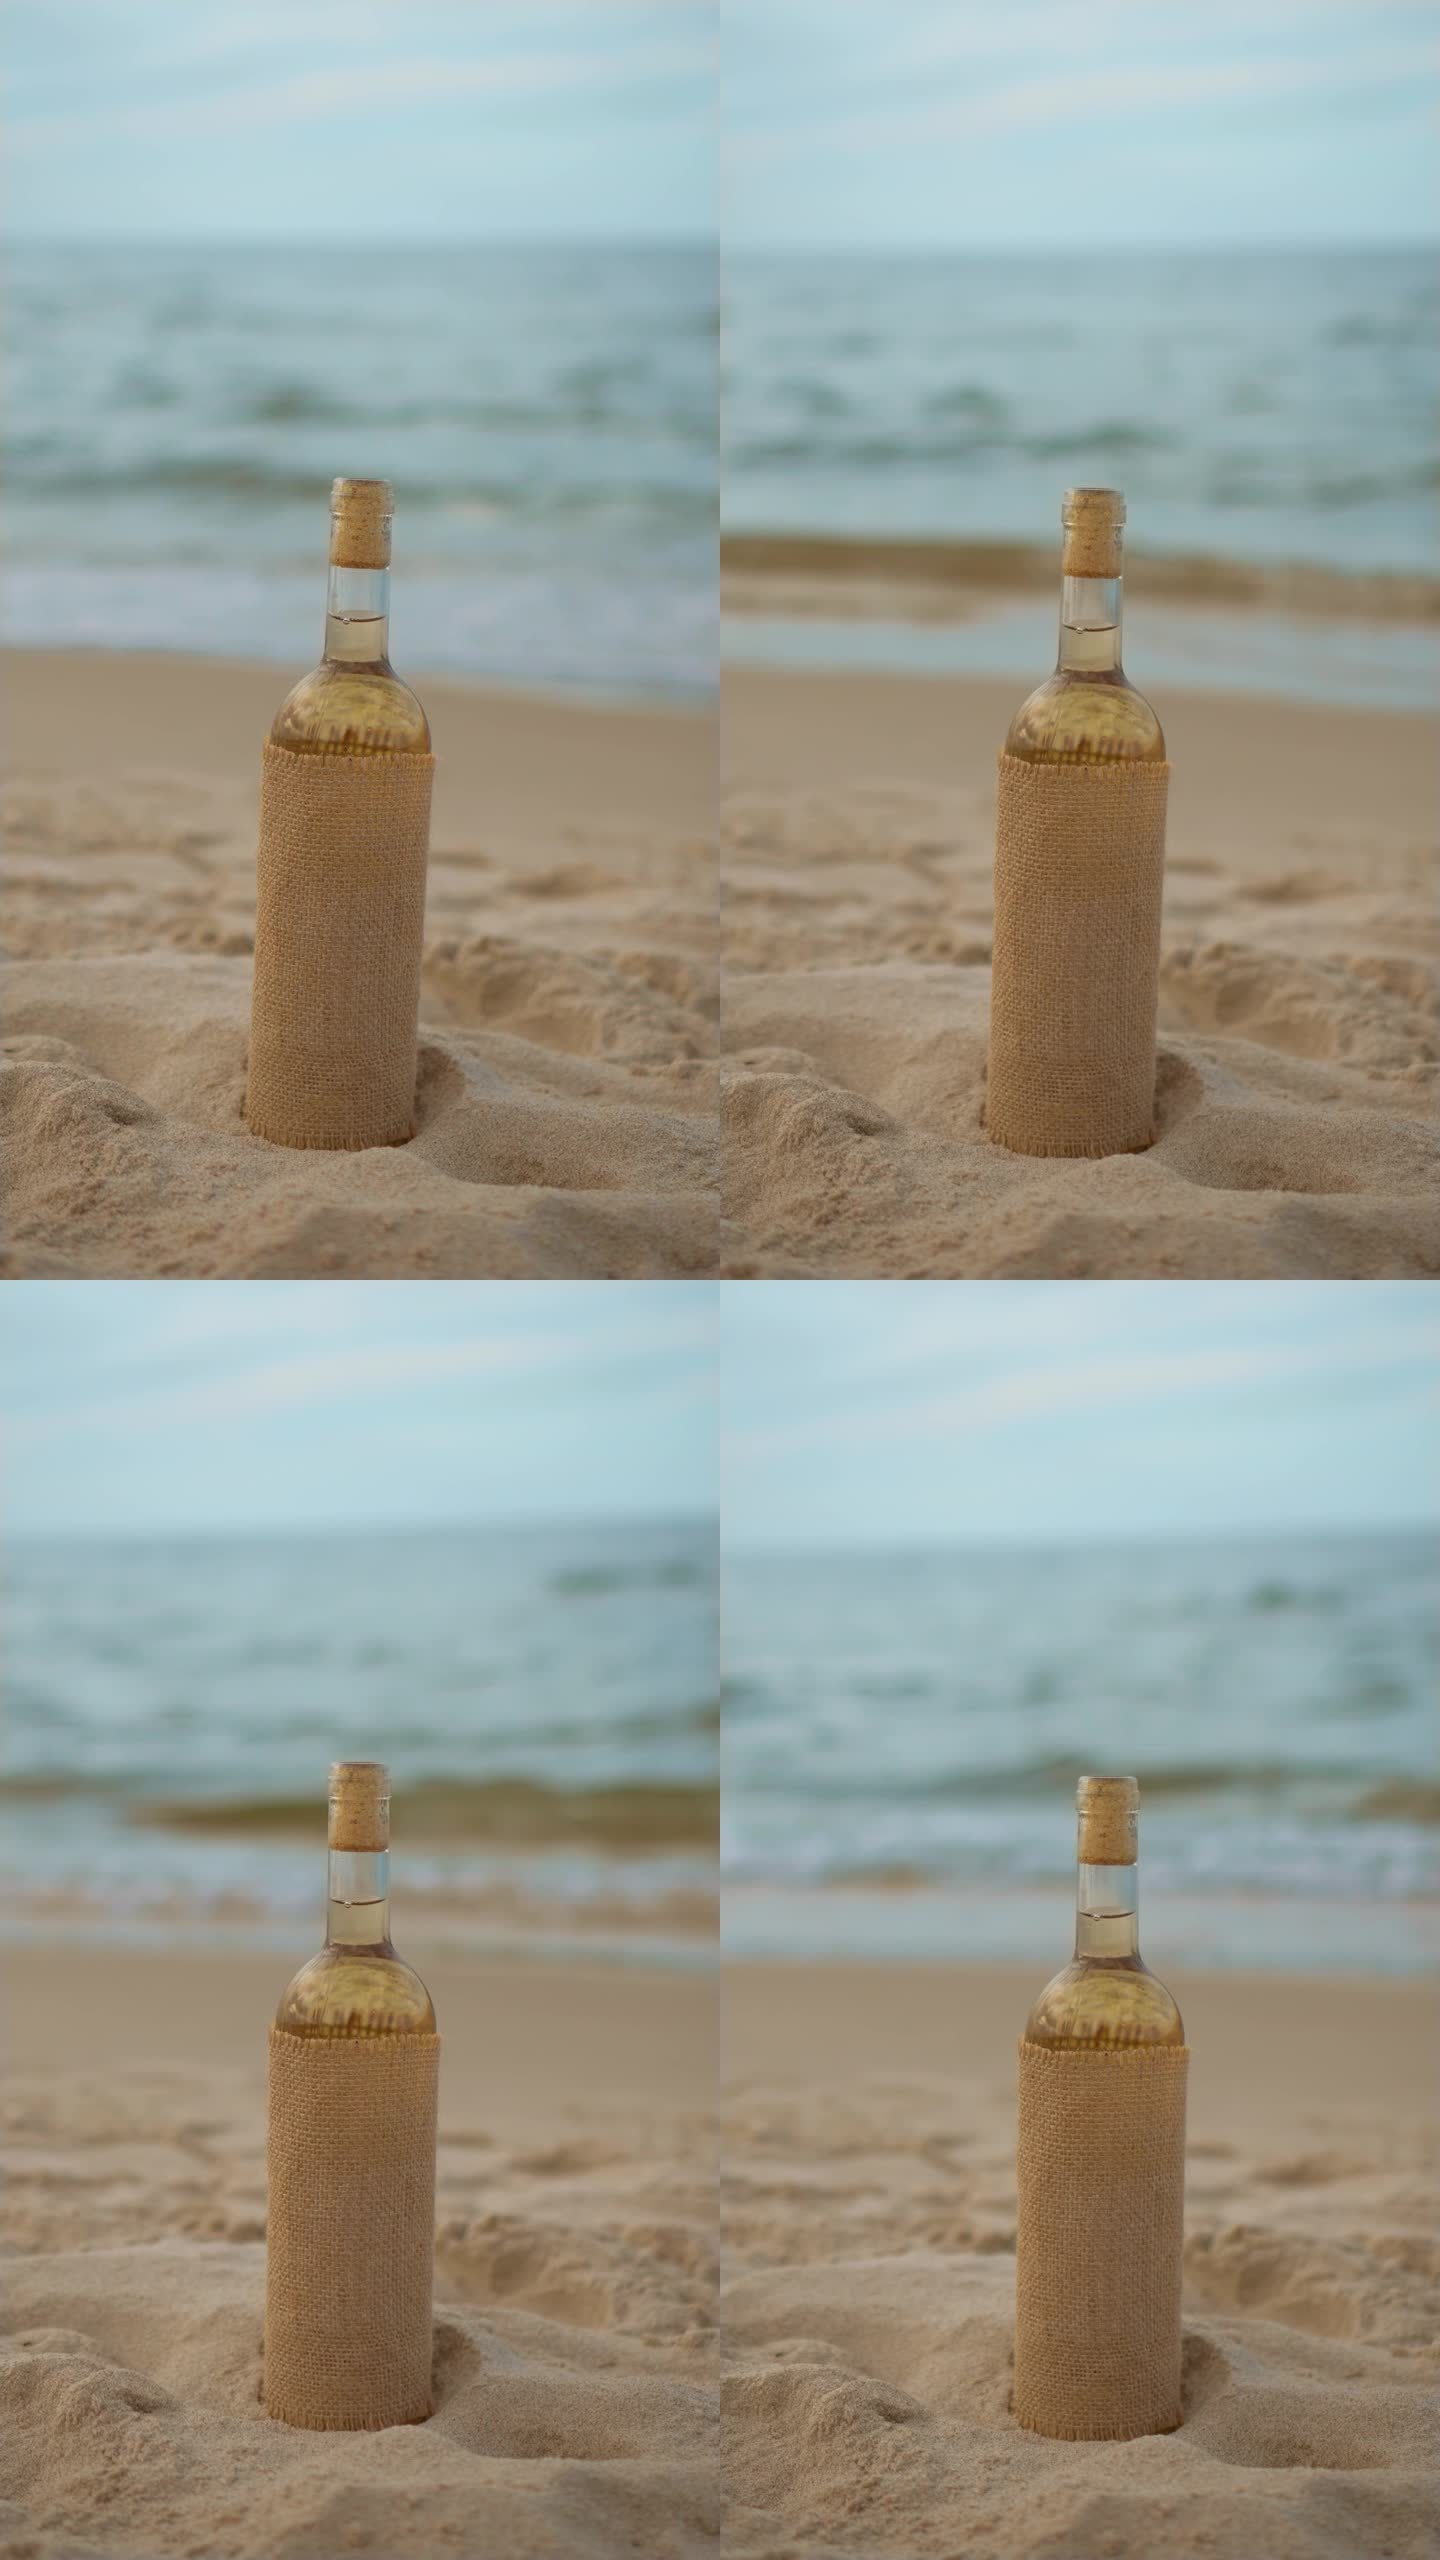 白葡萄酒在复古风格的瓶子在沙滩上的水波背景，垂直方向